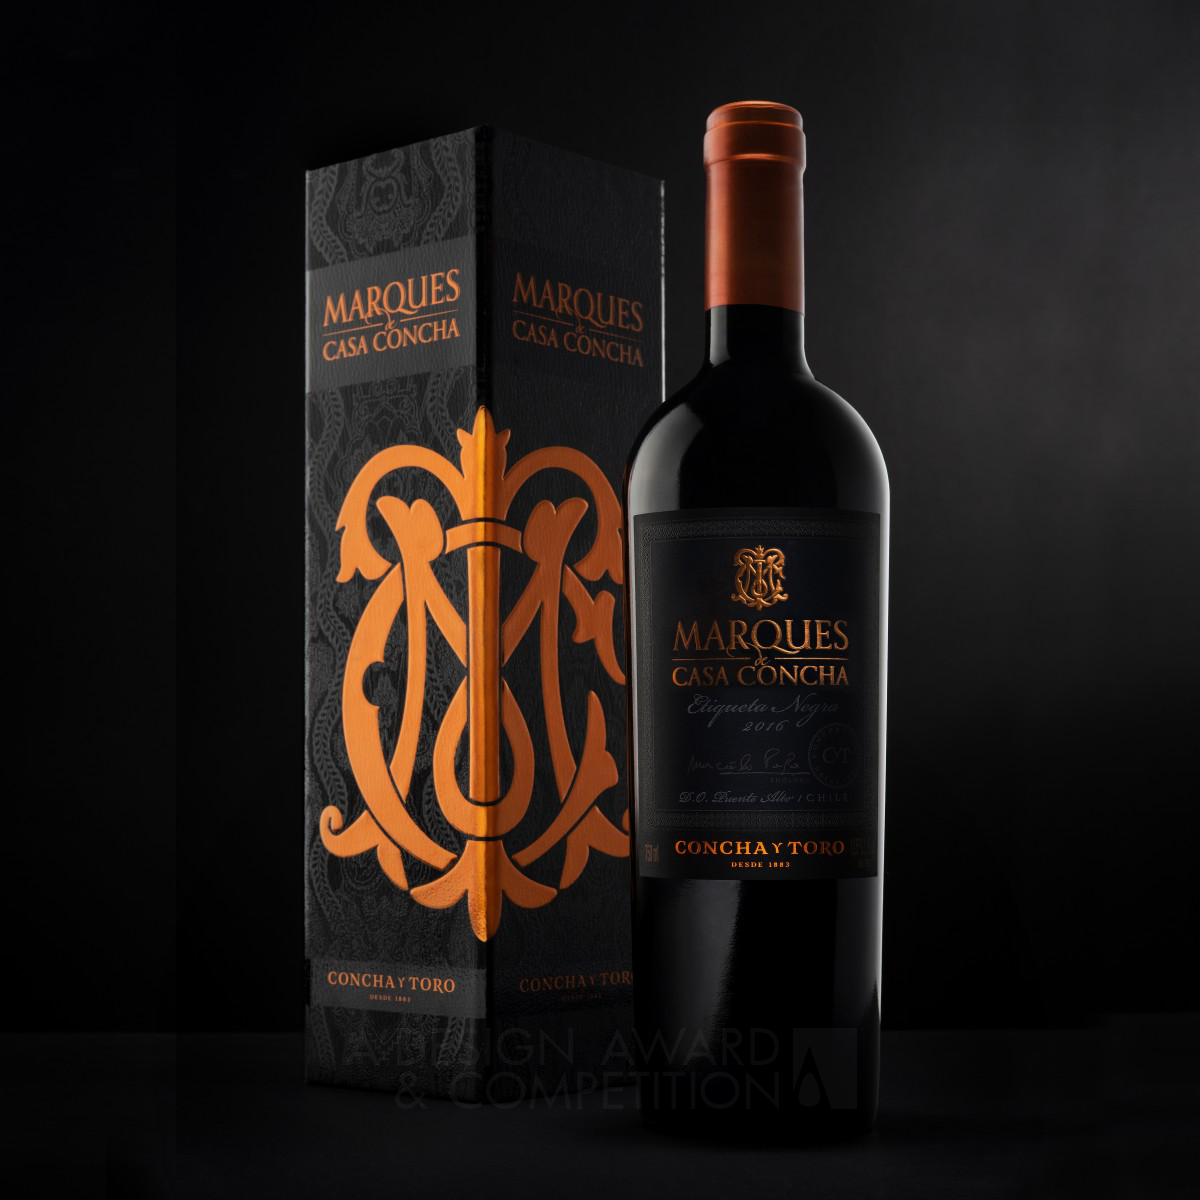 Marques de Casa Concha Wine Packaging by Ximena Ureta